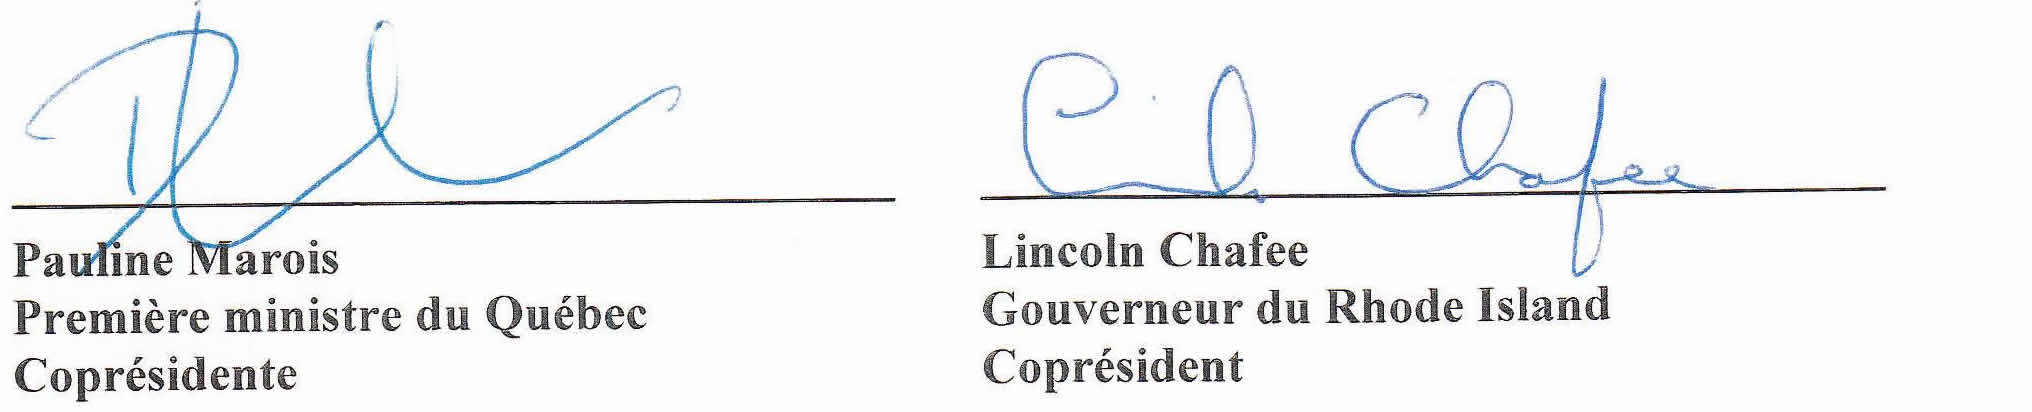 Signature de Pauline Marois, Première minister du Québec, Coprésidente et de Lincoln Chafee, Gouverneur du Rhode Island, Copréside